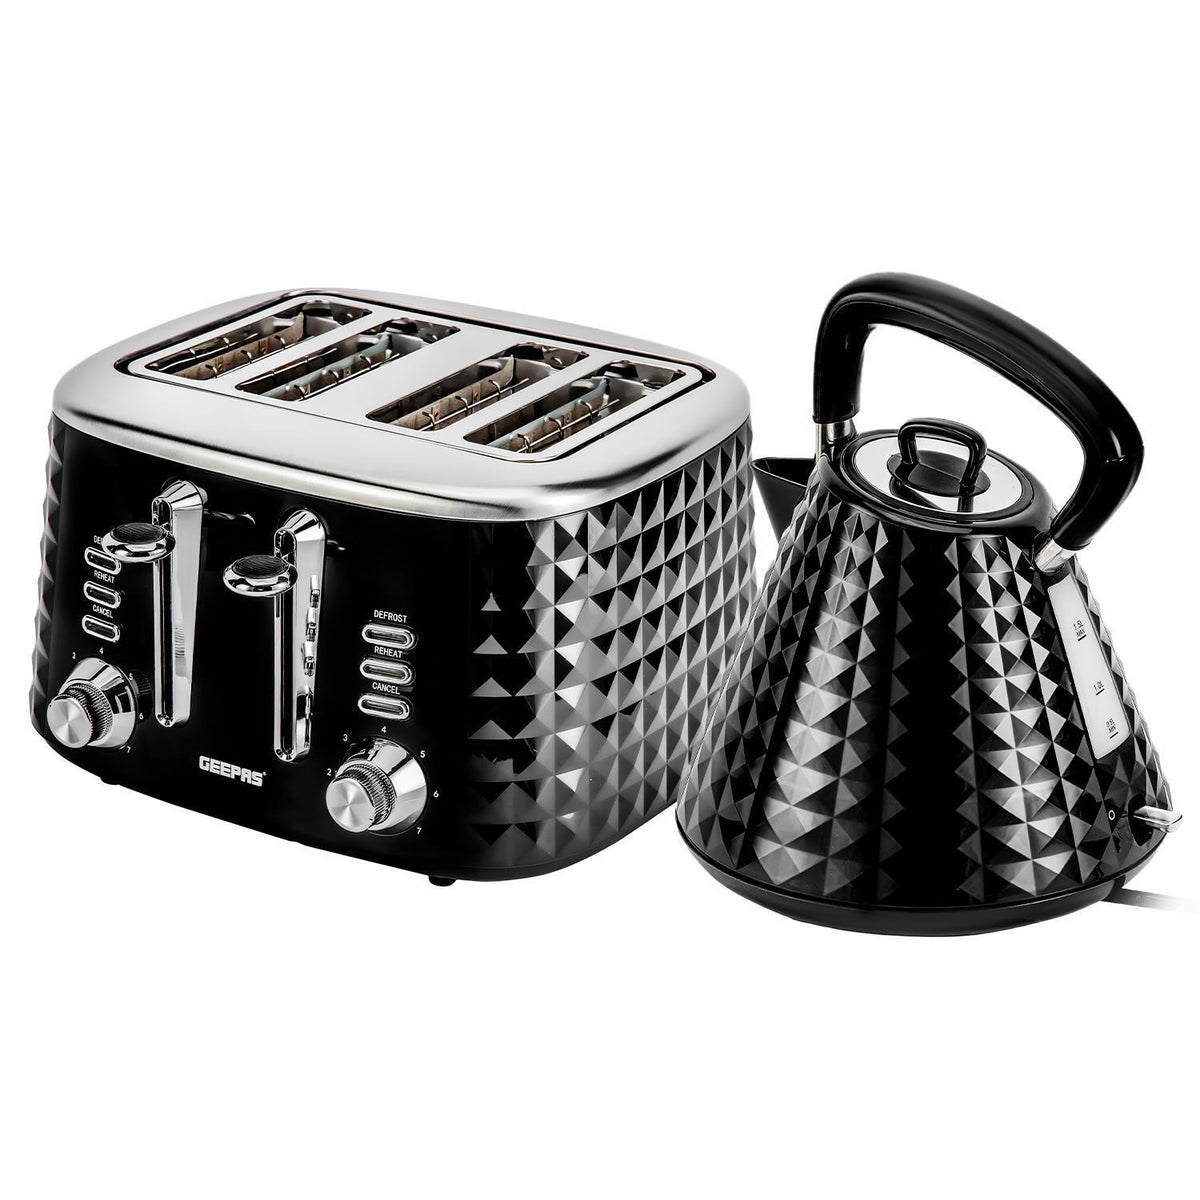 Black Short 4 Slice Bread Toaster & 1.5L Electric Kettle Set